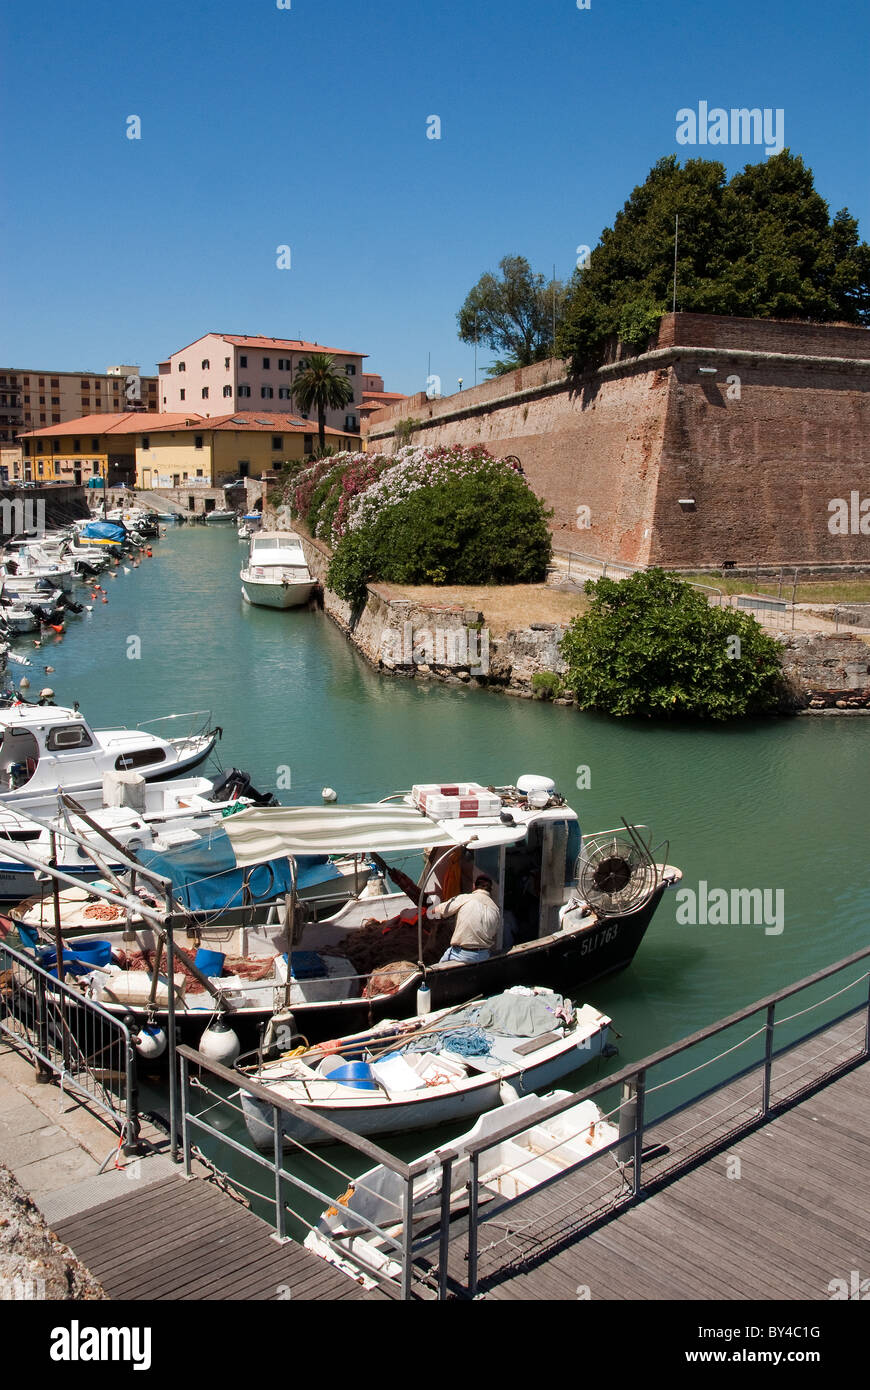 Puerto de Livorno Livorno o conocido como el distrito de Venecia, canales con murallas Foto de stock